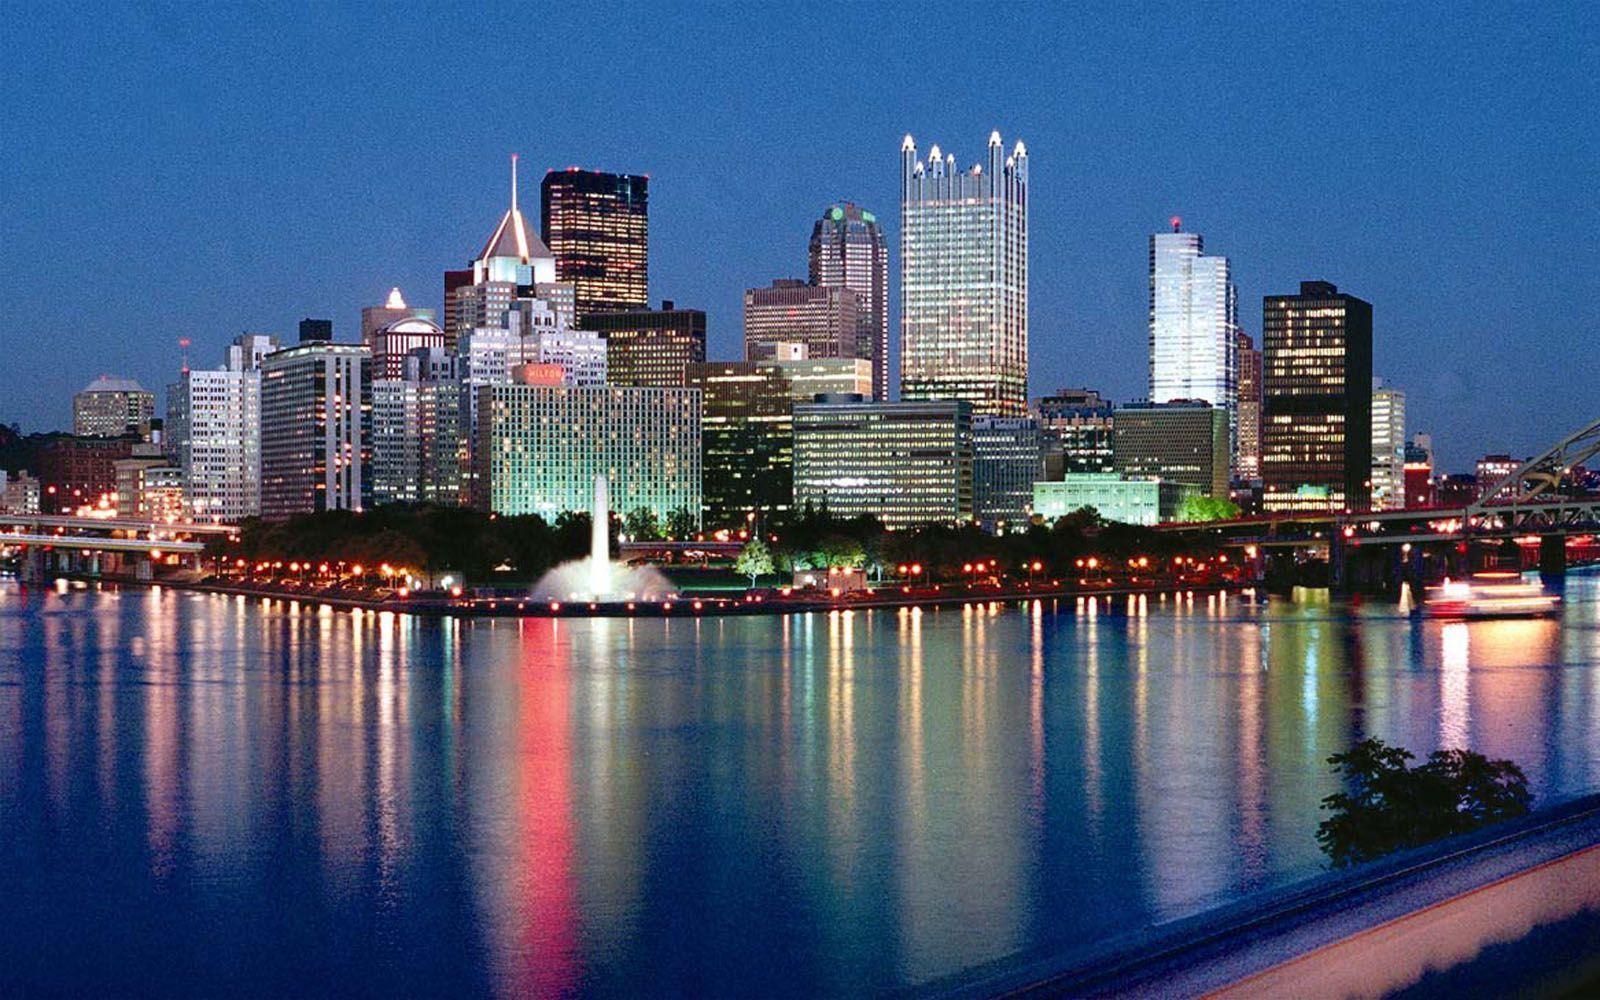 Pittsburgh Pennsylvania skyline